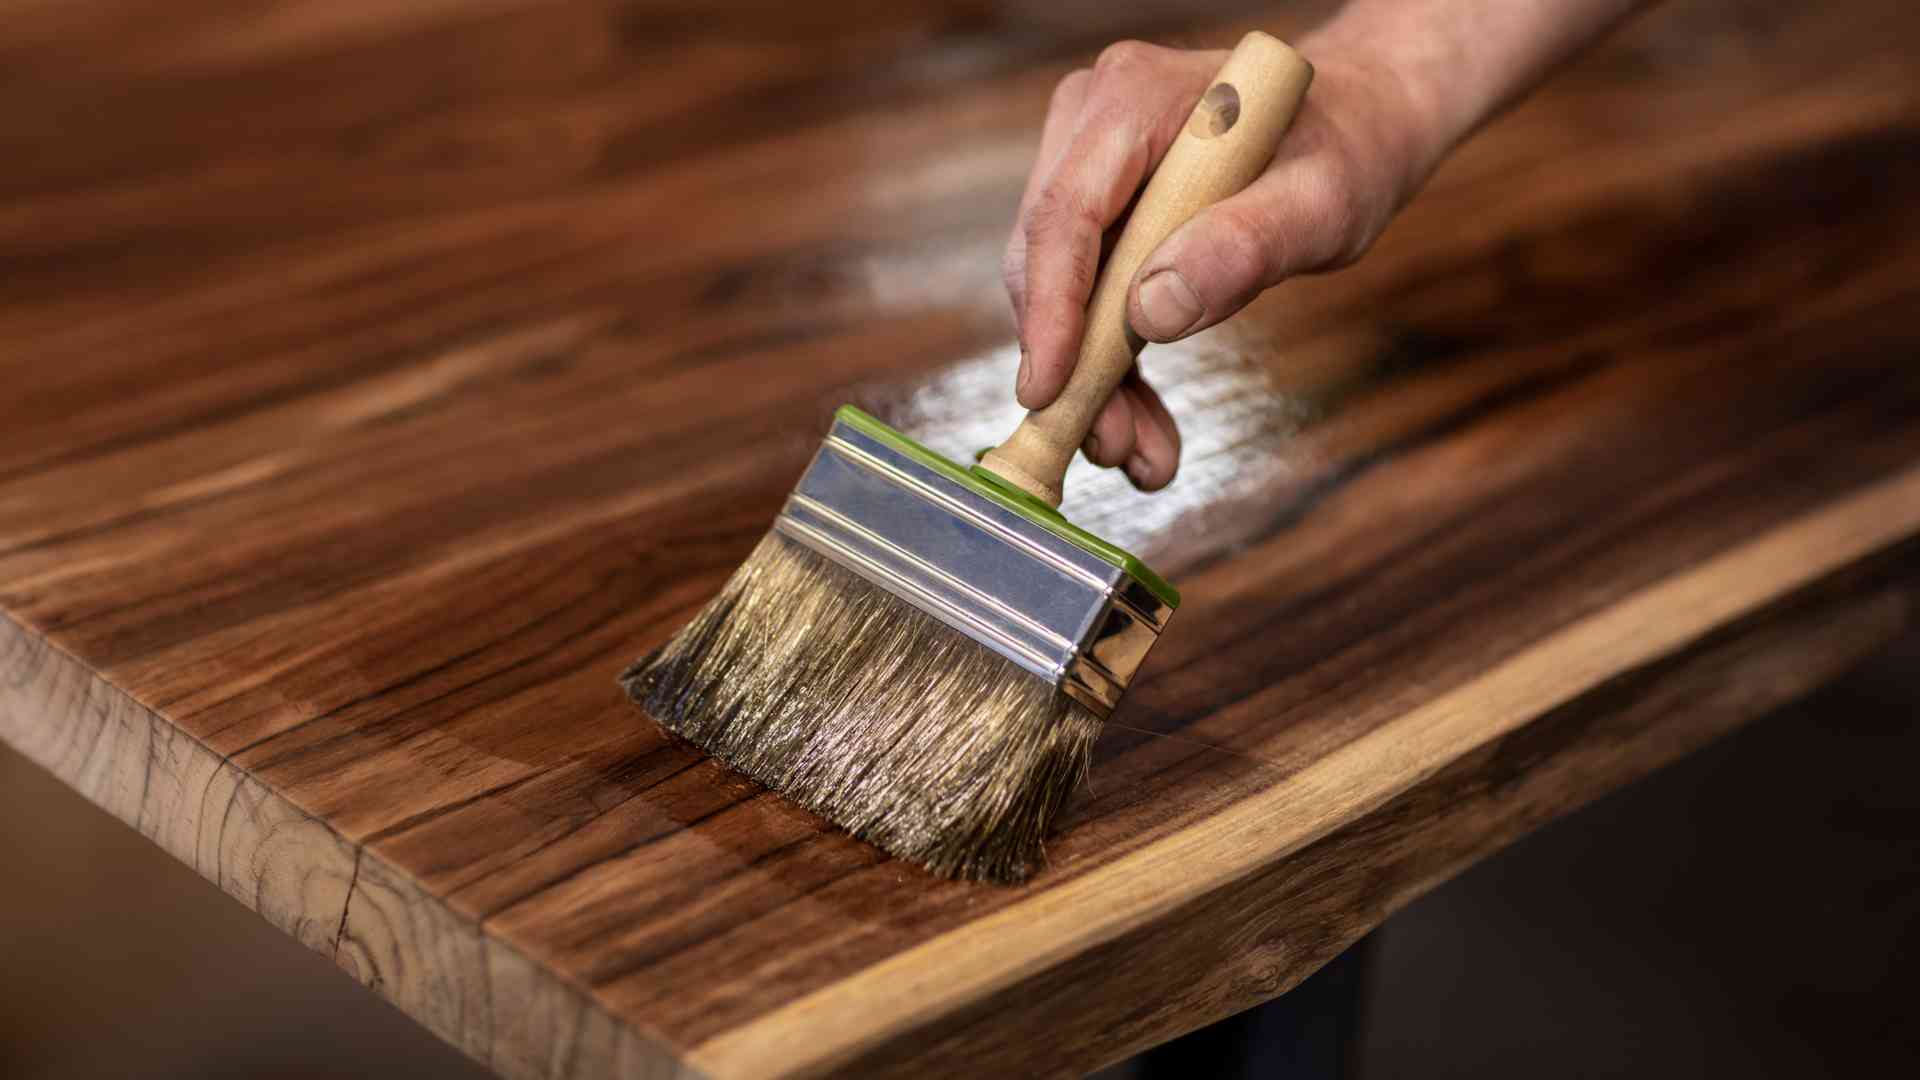 Consejos para cuidar el suelo de madera resistente exterior y